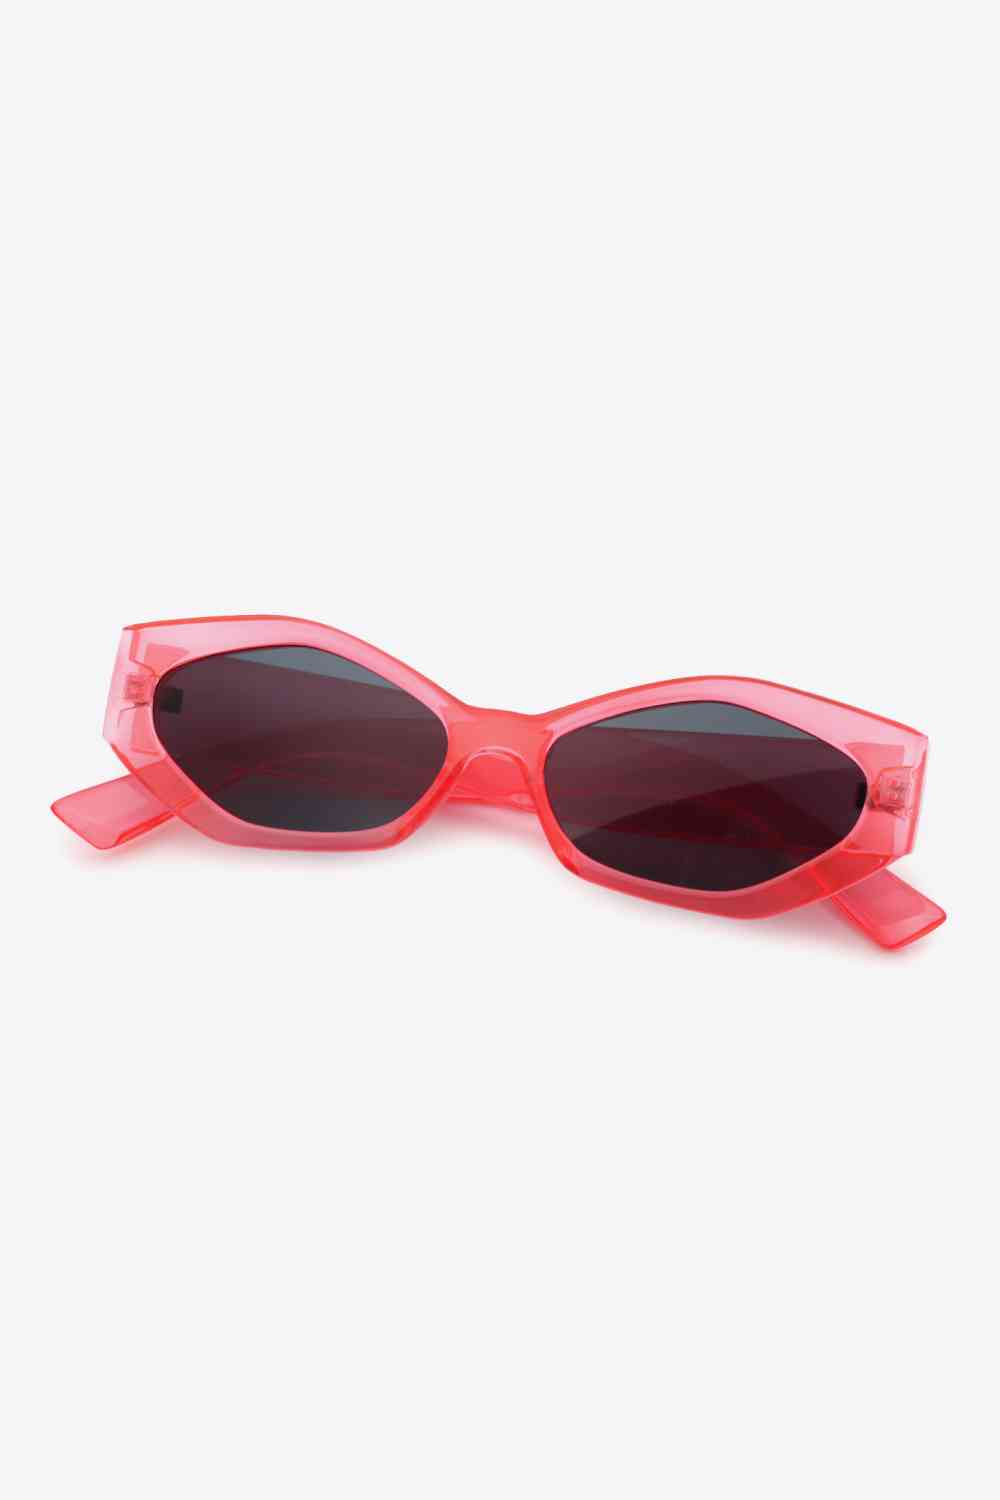 TEEK - Sautee Sis Sunglasses EYEGLASSES TEEK Trend   